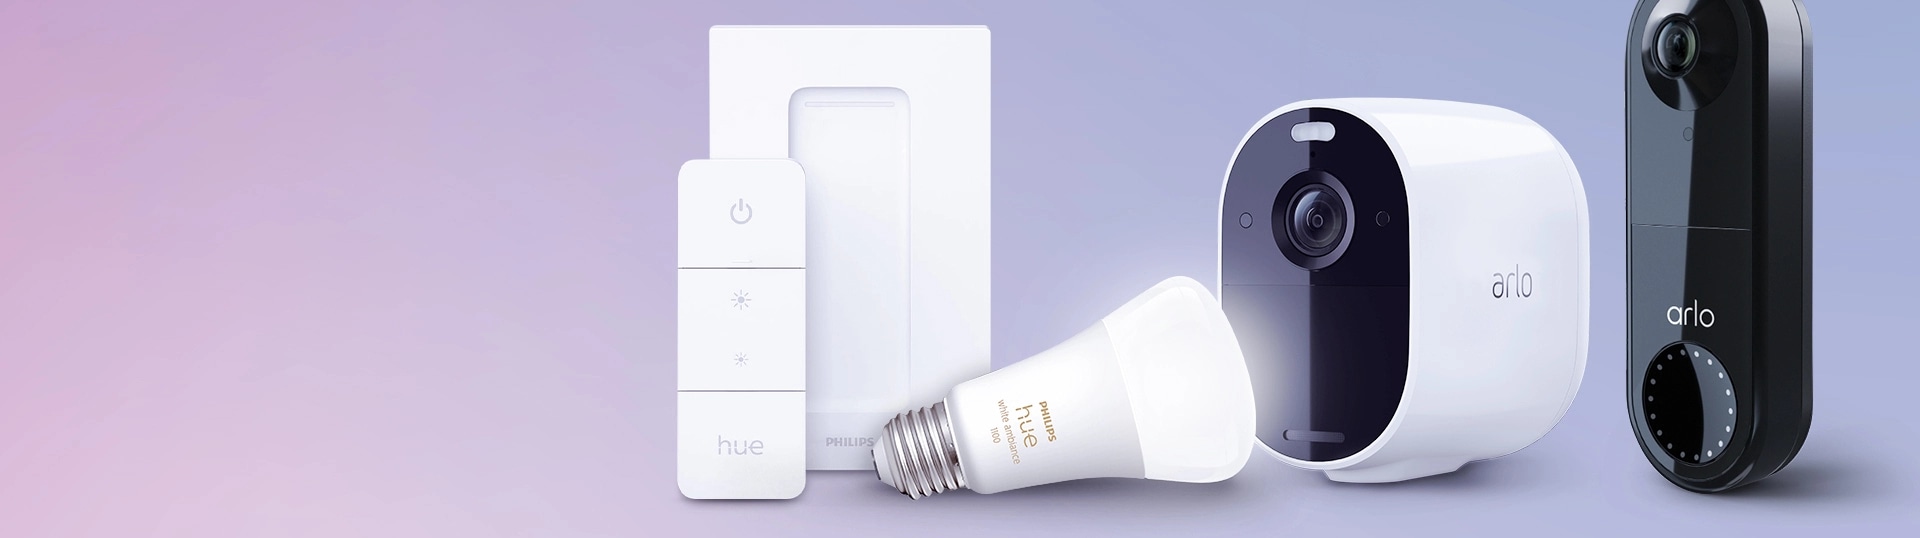 smart home essentials smart lighting philips hue smart security arlo doorbells